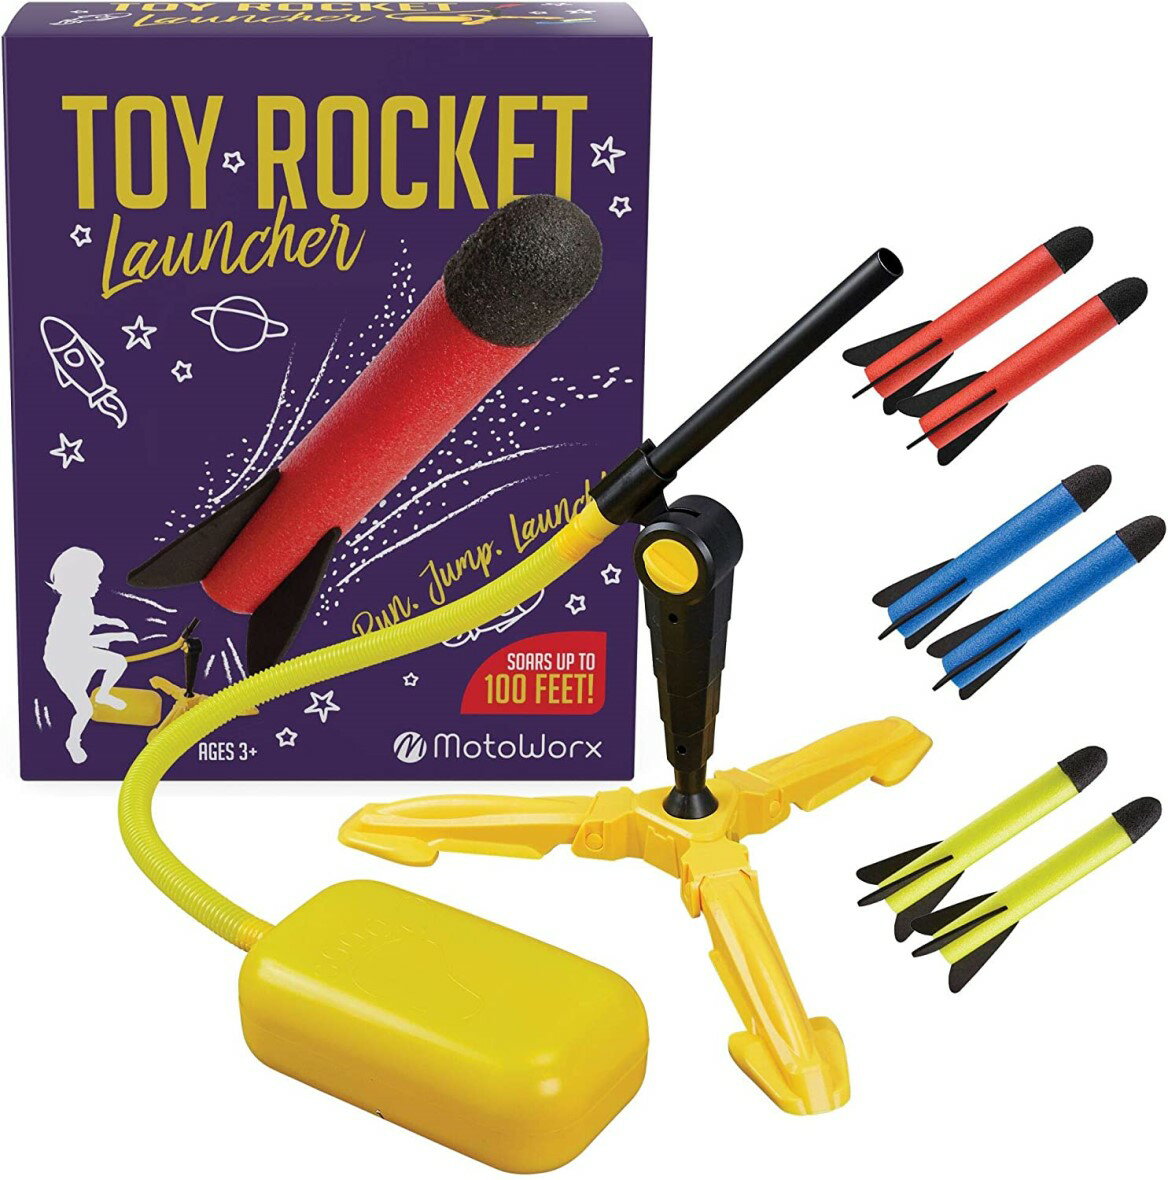 おもちゃロケット ロケットランチャー キッズ用ロケット 子ども用ロケット アウトドア おもちゃ ギフトおもちゃ 屋内 屋外おもちゃ プレゼント ロケットスタンドセット付 ロケット8本入り Rocket Launcher / 知育玩具 おもちゃのロケット